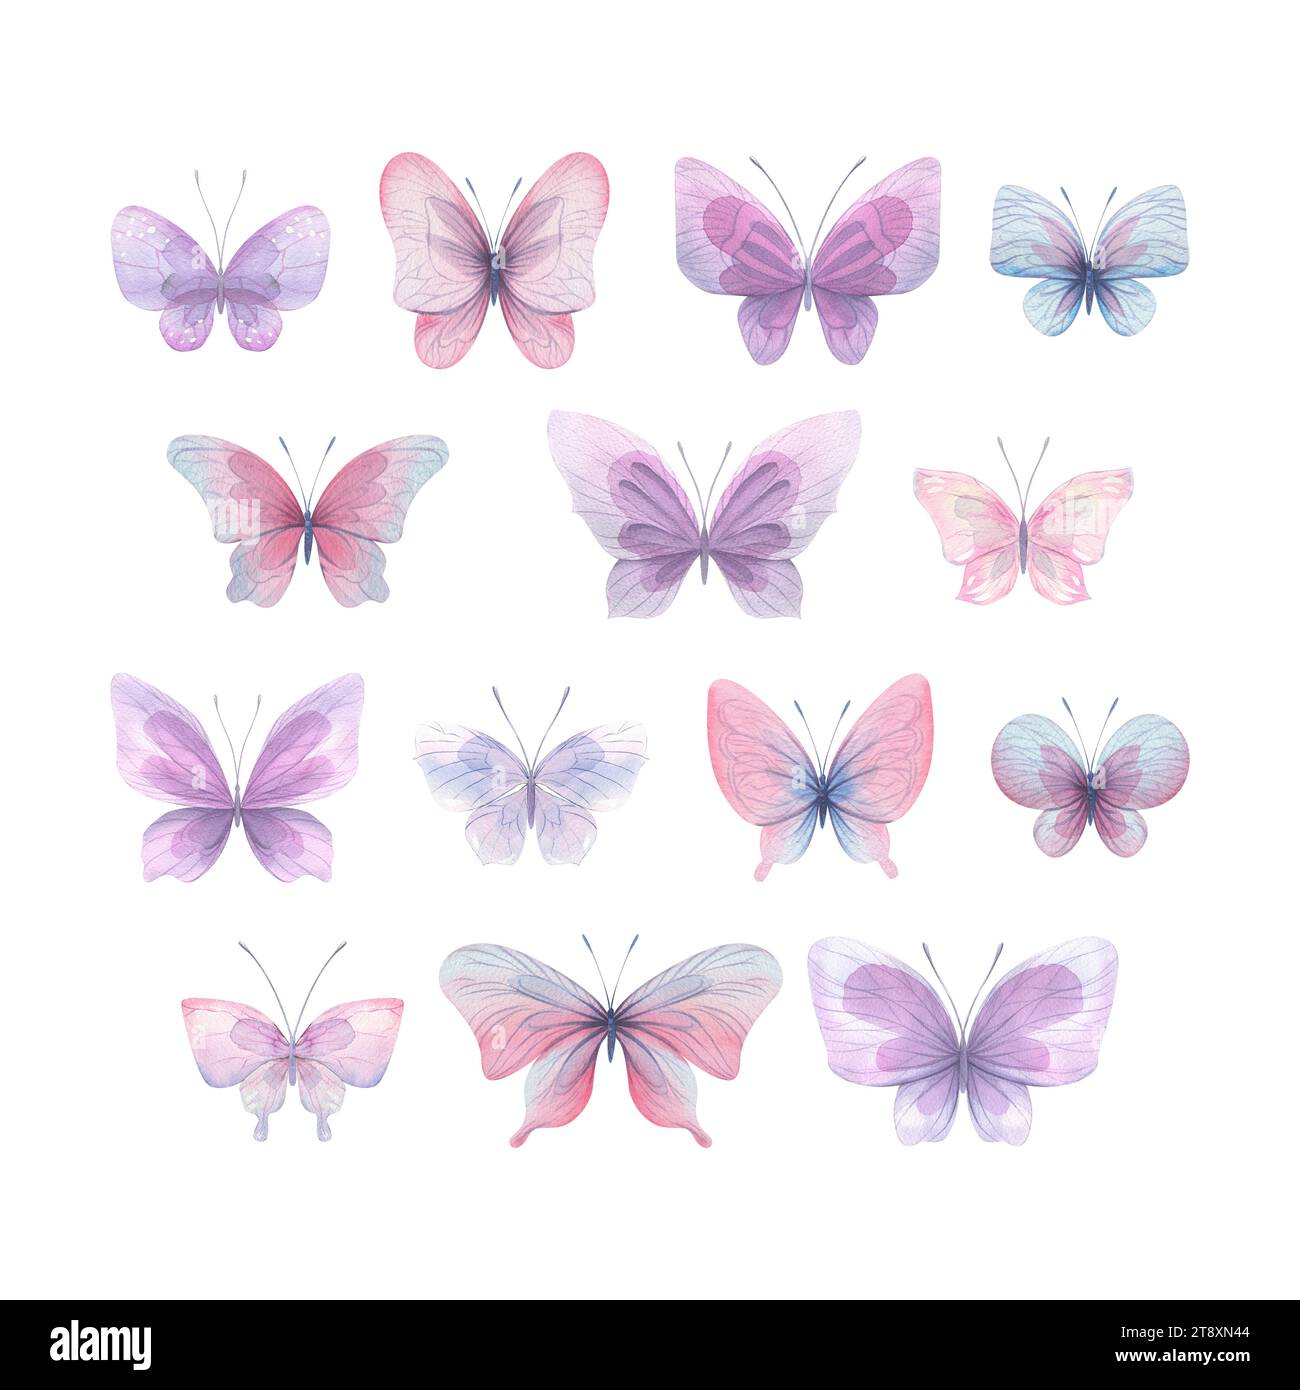 Le farfalle sono rosa, blu, lilla, volanti, delicate con ali e spruzzi di vernice. Illustrazione ad acquerello disegnata a mano. Set di elementi isolati attivato Foto Stock